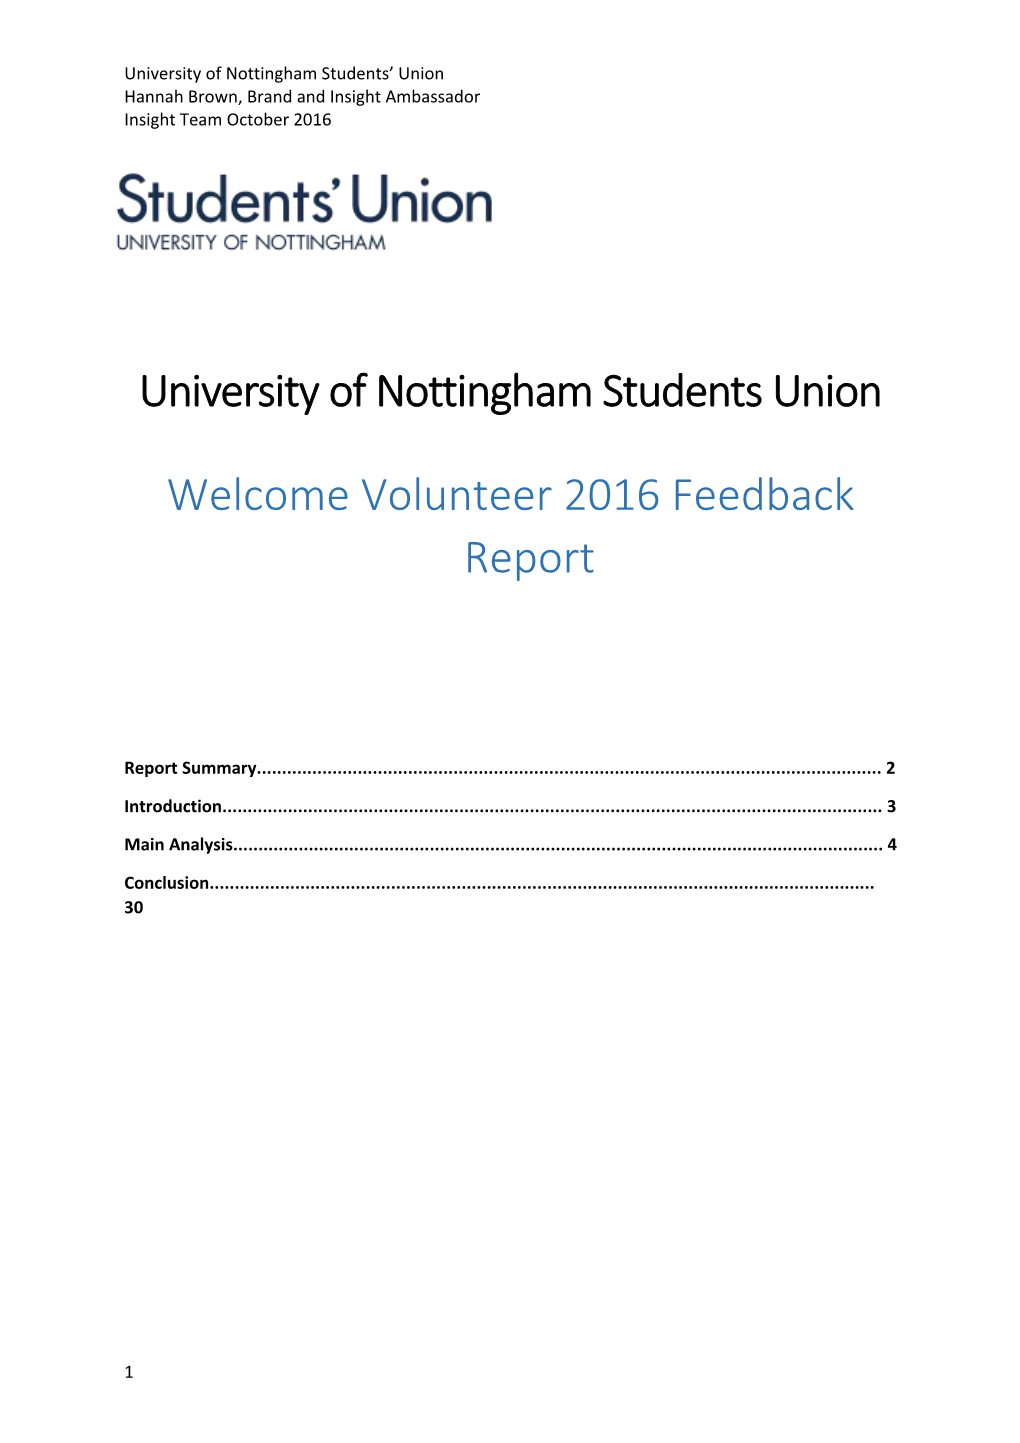 University of Nottingham Students Union